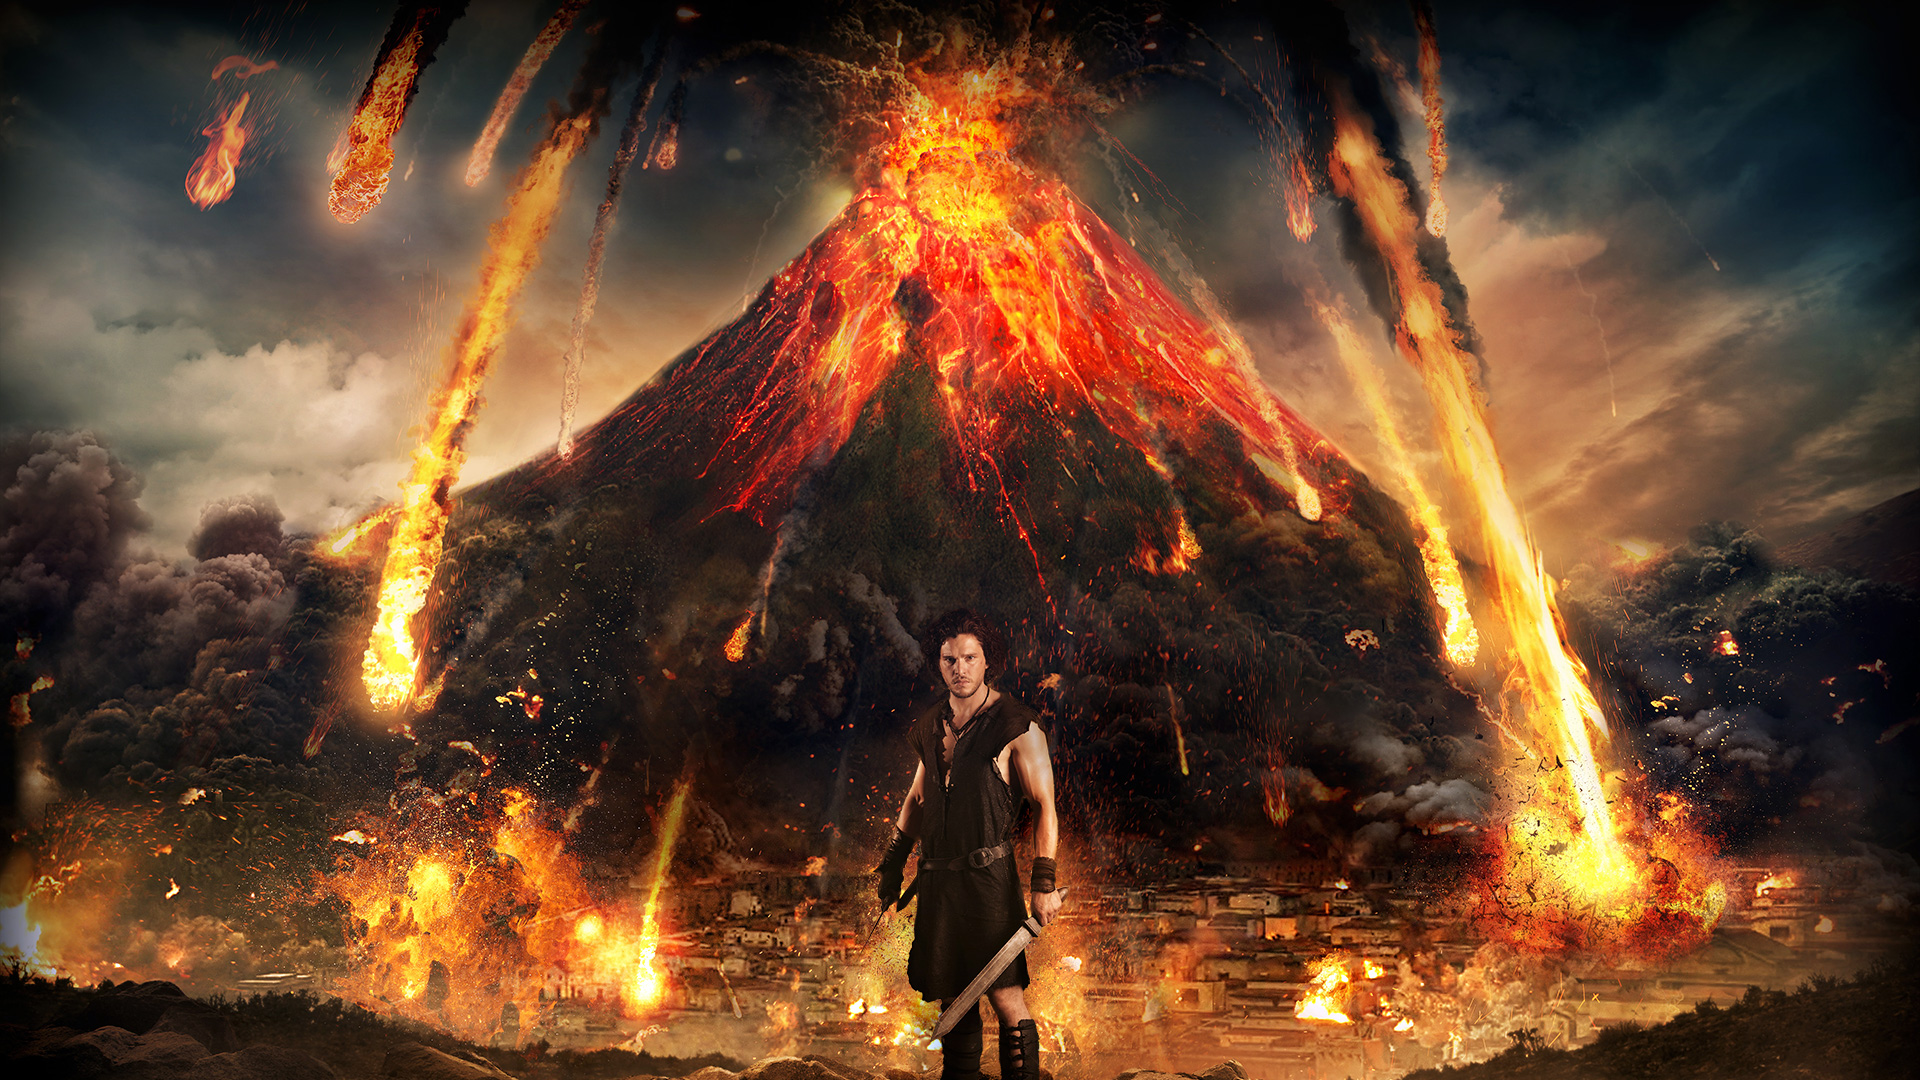 Movie Pompeii (2014) HD Wallpaper | Background Image